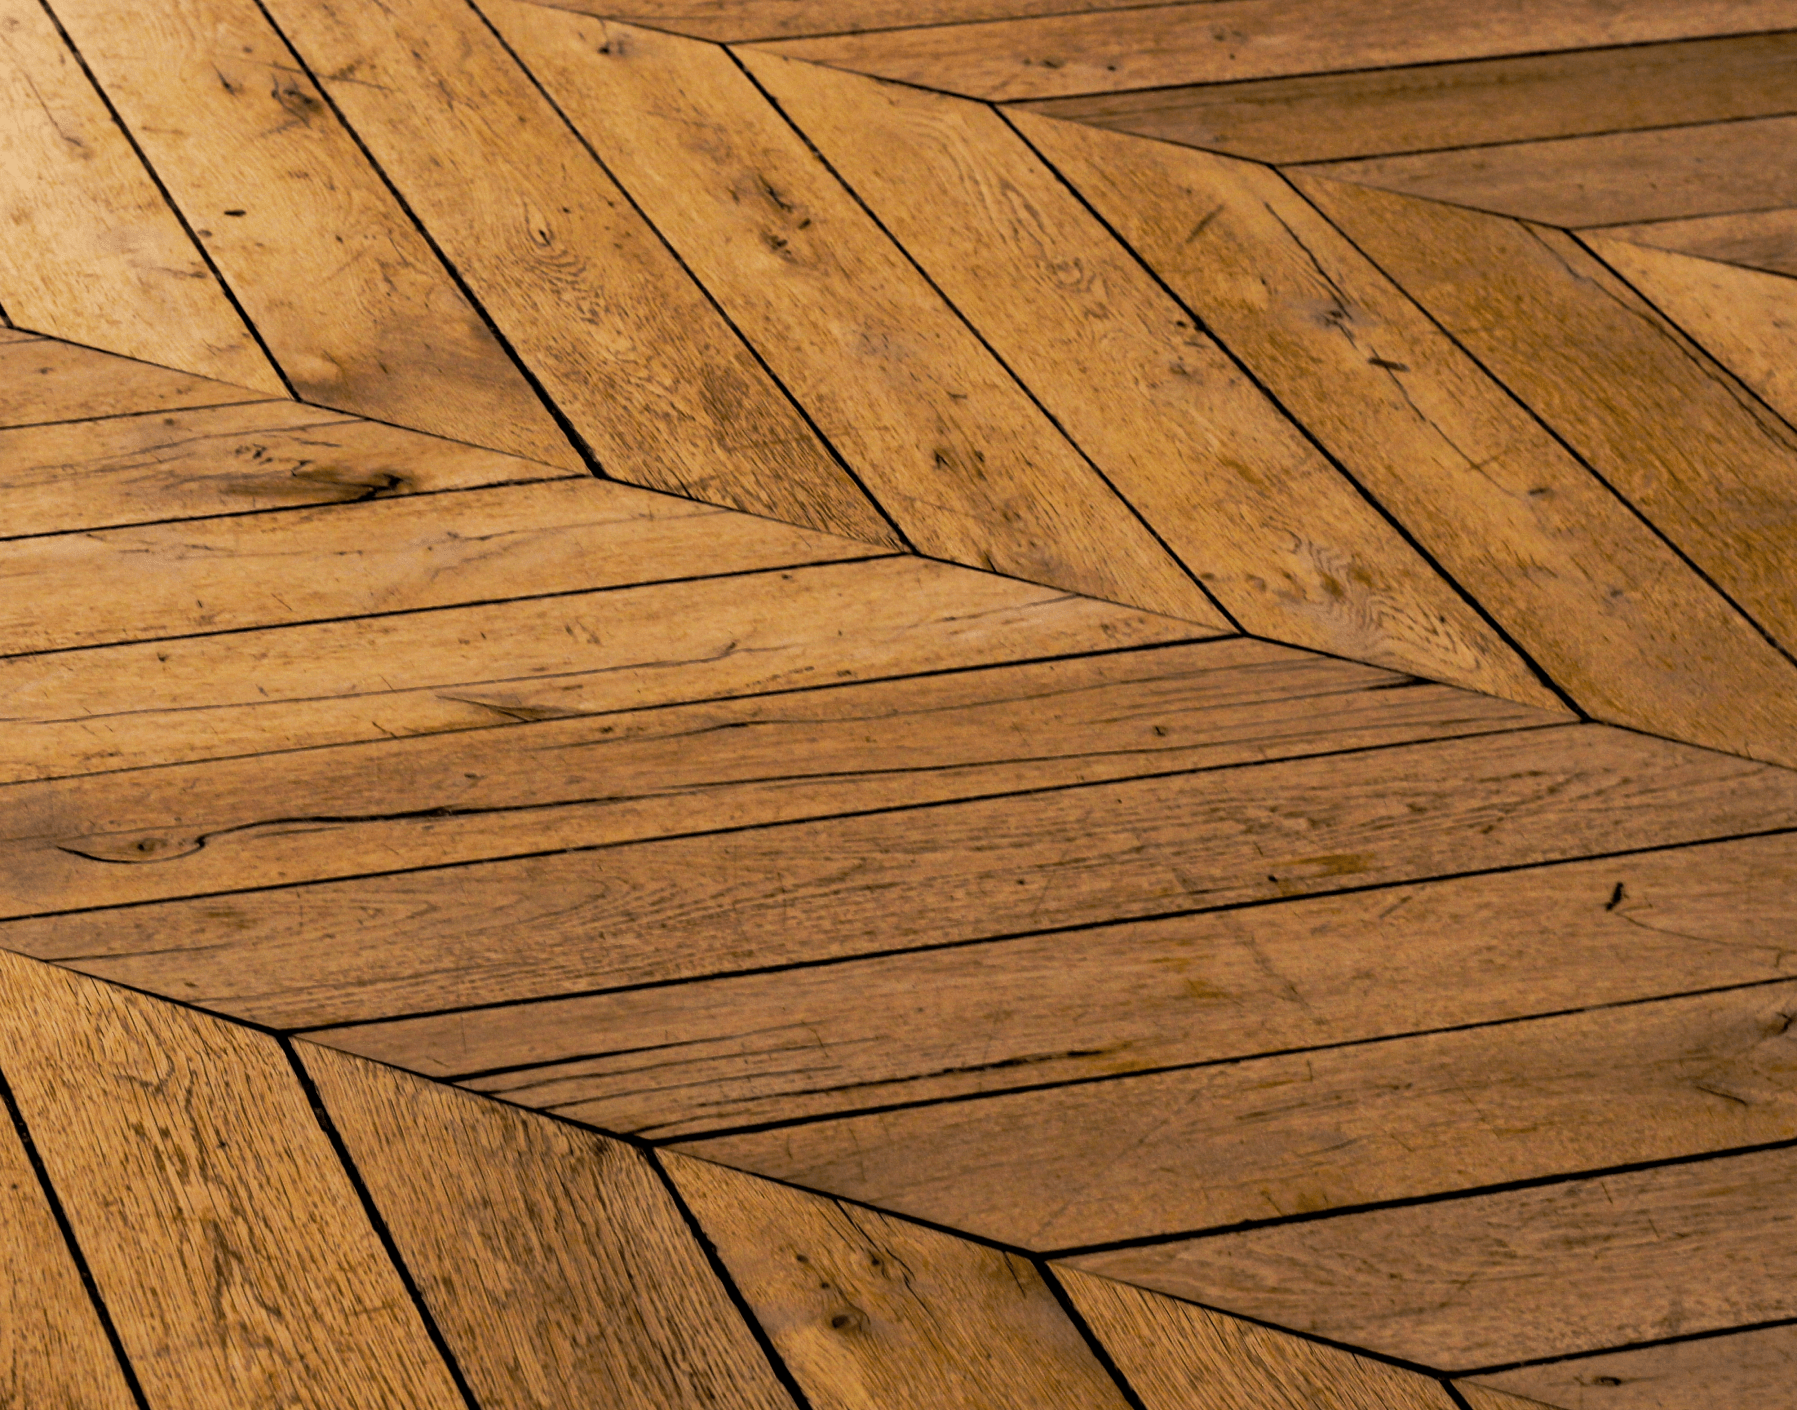 Herringbone hardwood floor in warm tones